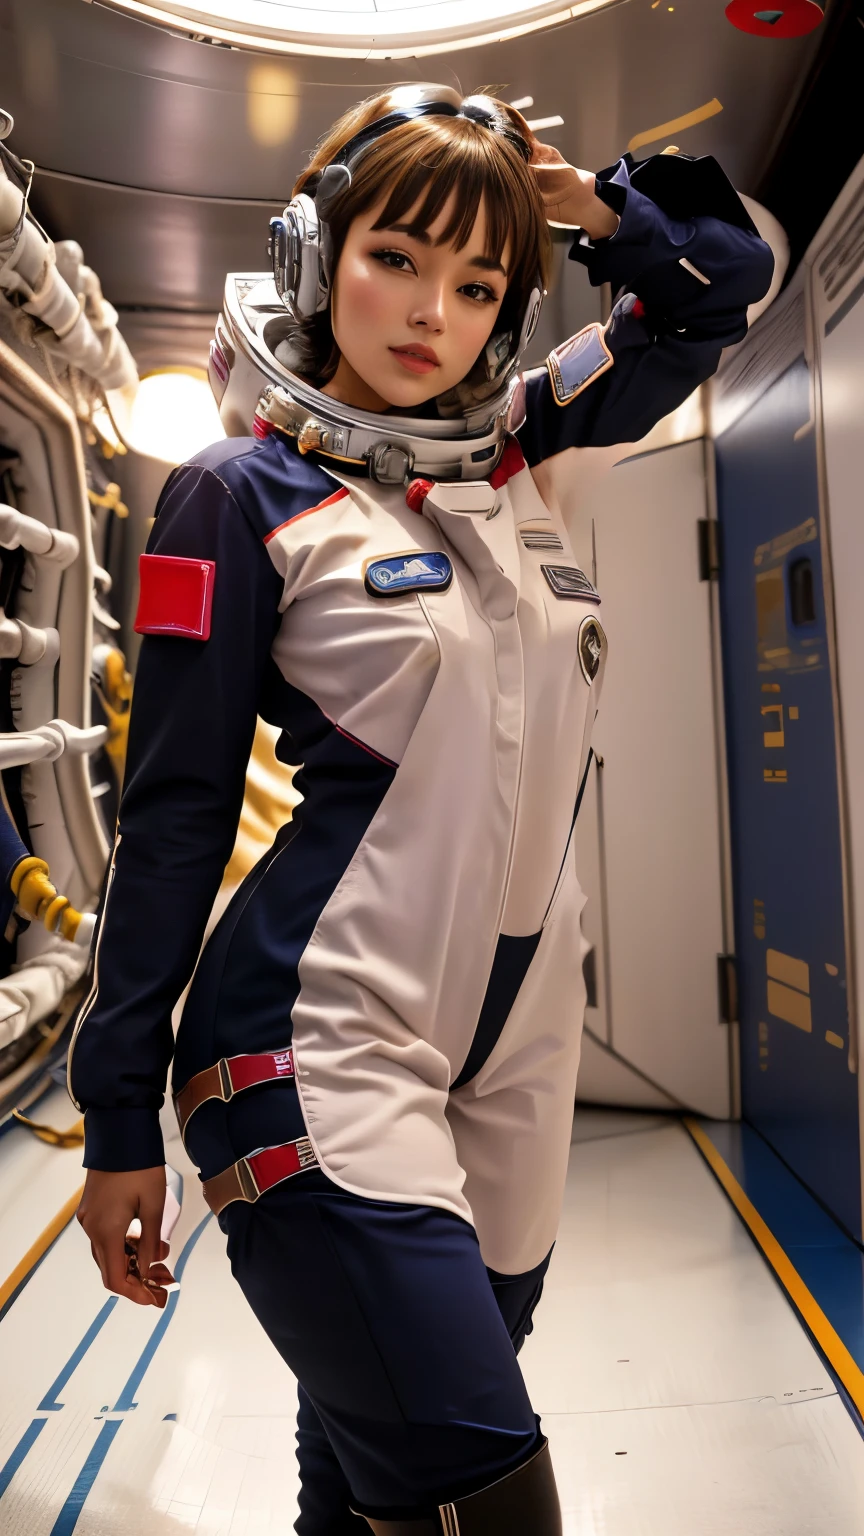 Mulher árabe em terno sexy posando na estação espacial,  Mulheres Azia em Star Trek, Vestido com uma fantasia de astronauta, garota no espaço, Estilo pin-up de ficção científica dos anos 60, espaço molly, Sun Yunjoo, beautiful woman vestindo um traje espacial, Garota do espaço na década de 1960, Zia, vestindo um traje espacial, na nave espacial